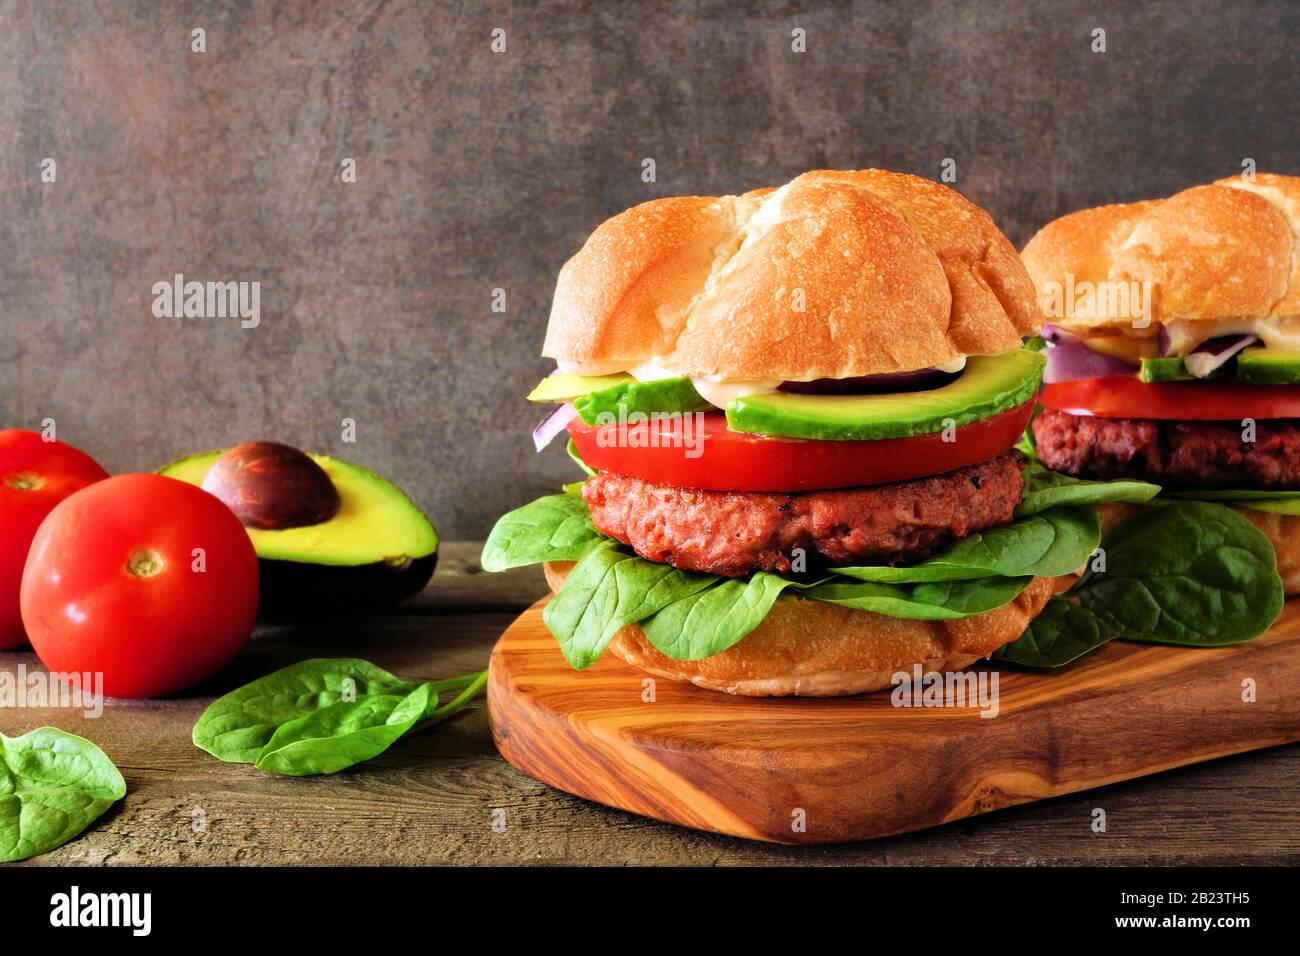 Hamburger senza carne a base di piante con avocado, pomodoro e spinaci su una tavola da portata su sfondo scuro Foto Stock